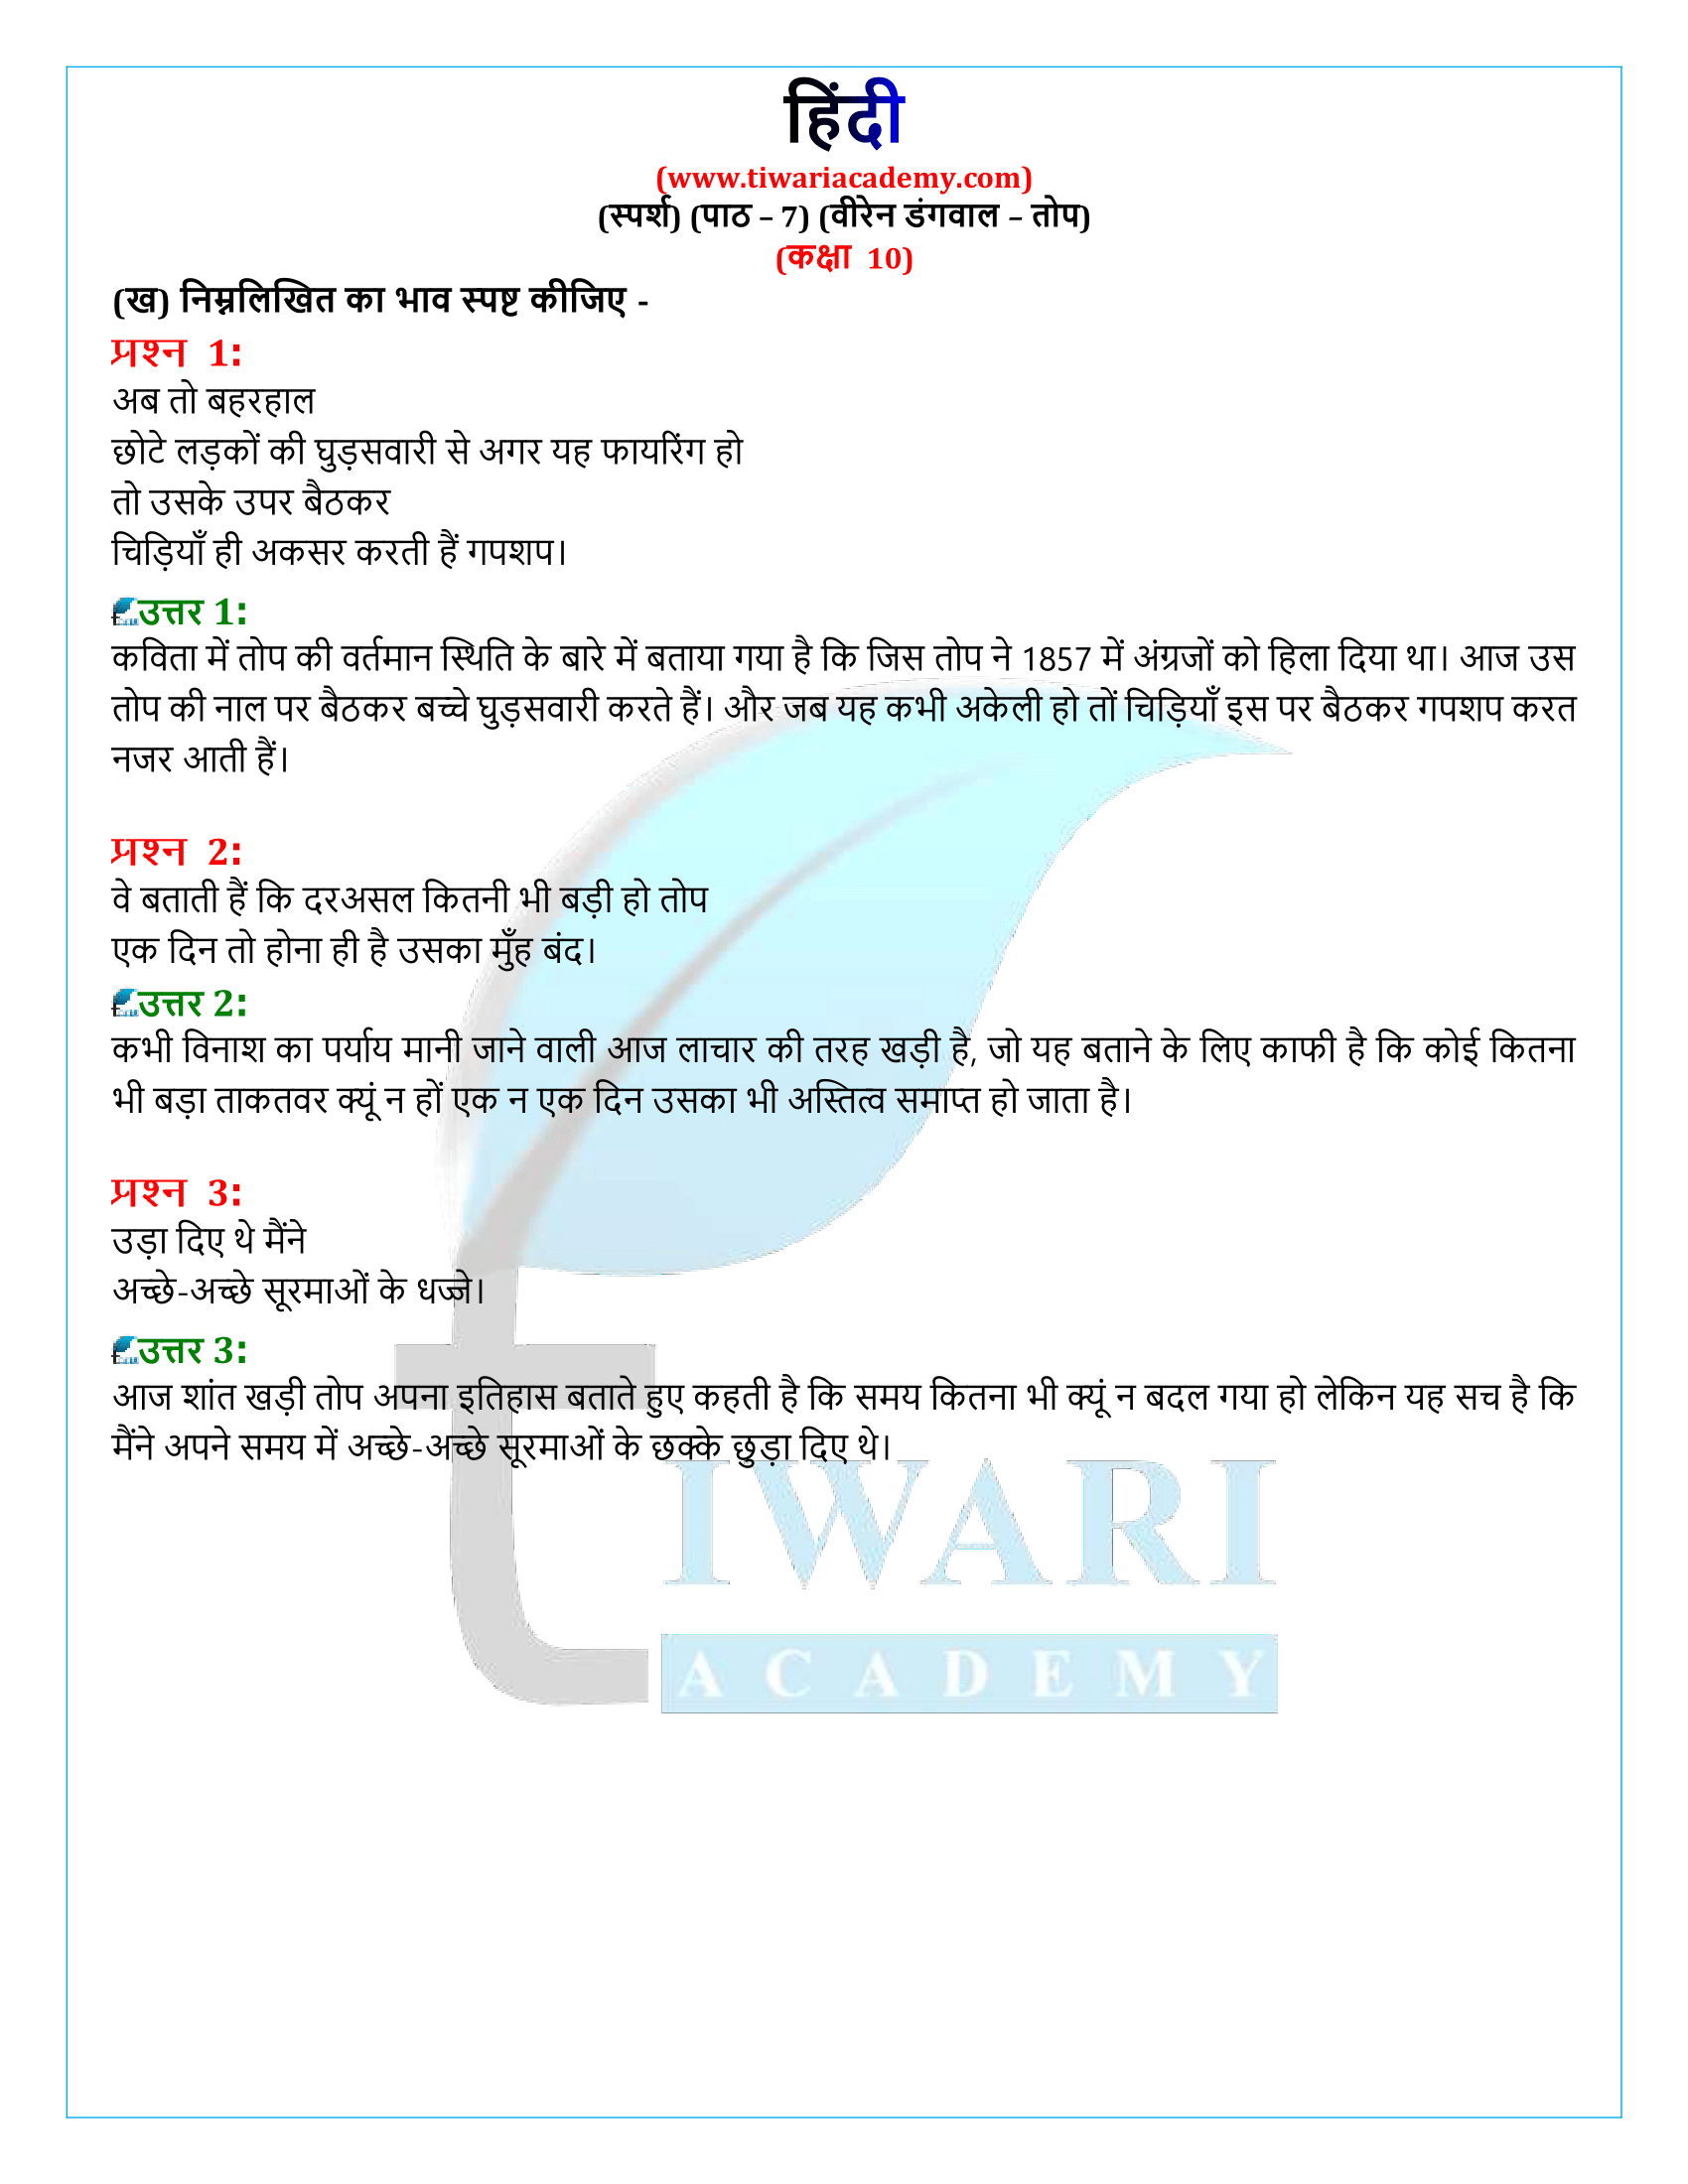 कक्षा 10 हिंदी स्पर्श अध्याय 7 के समाधान